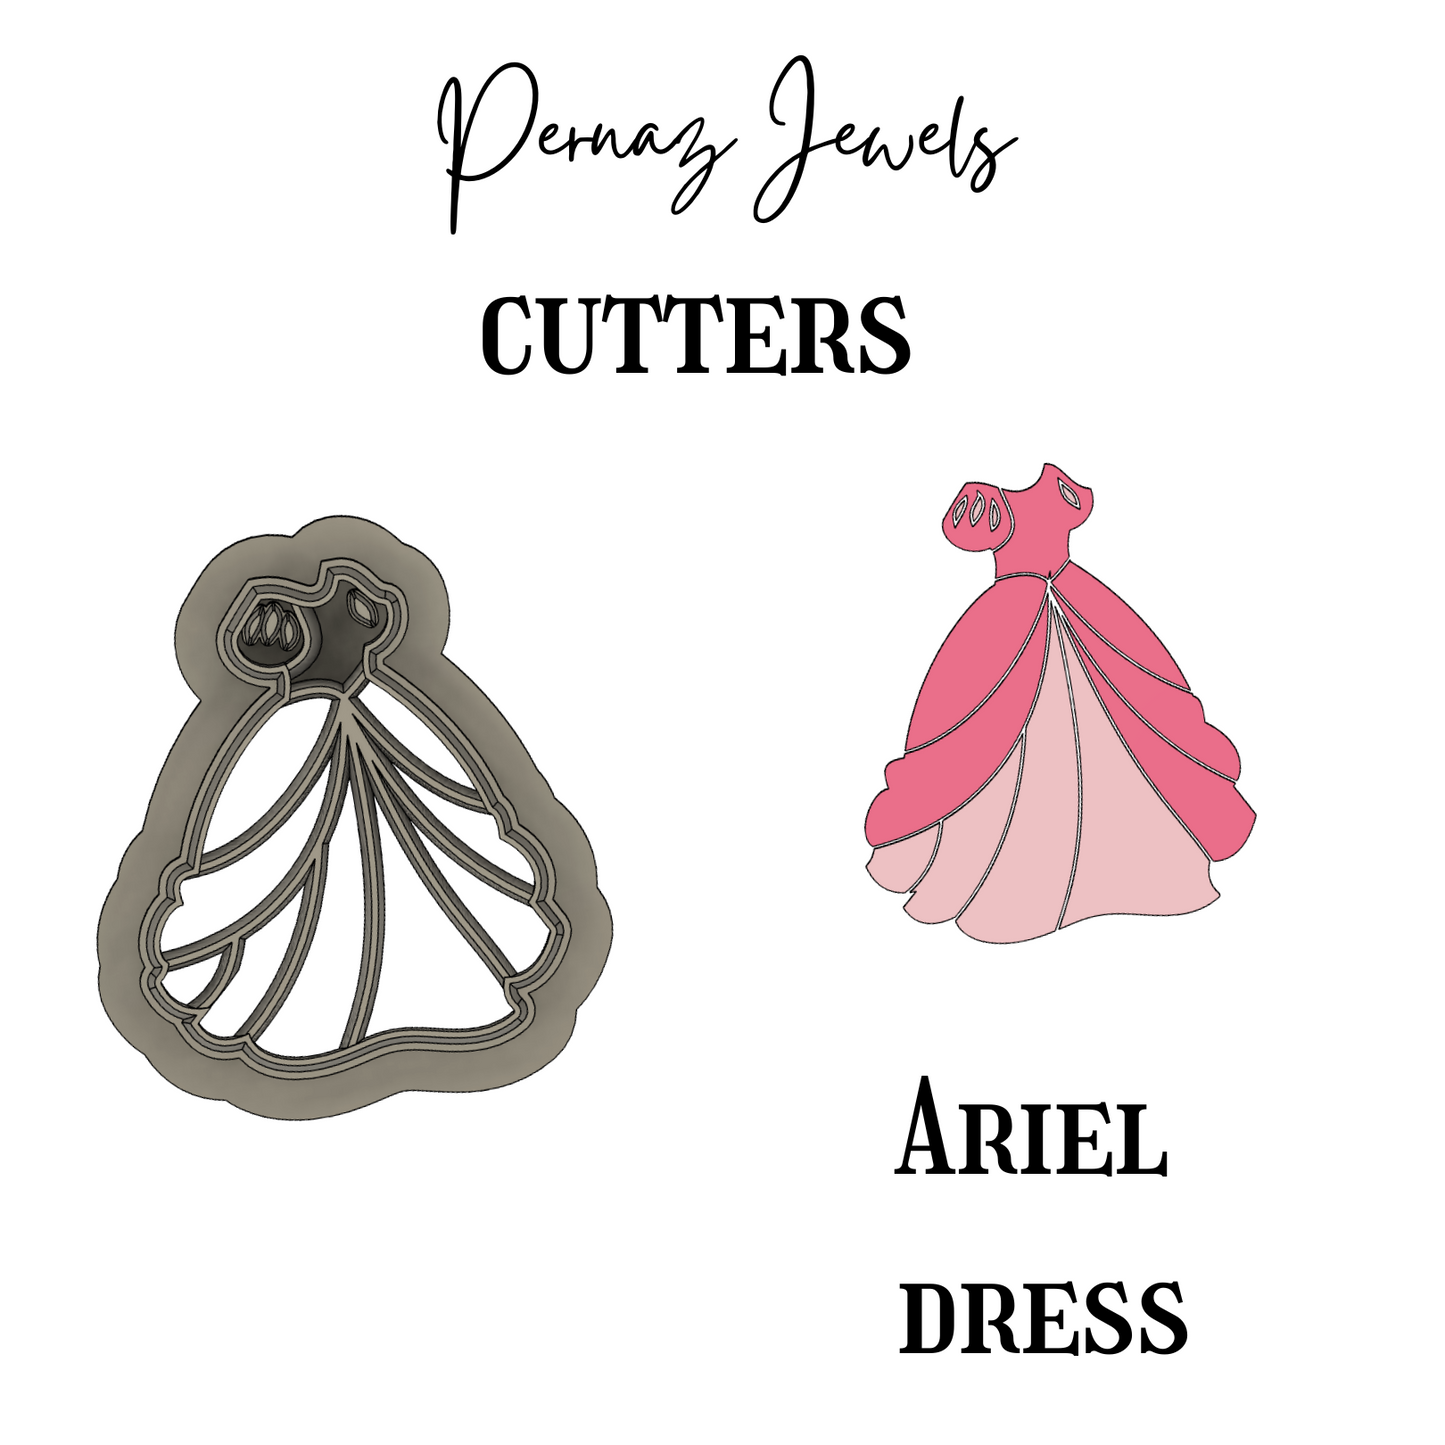 Ariel dress cutter